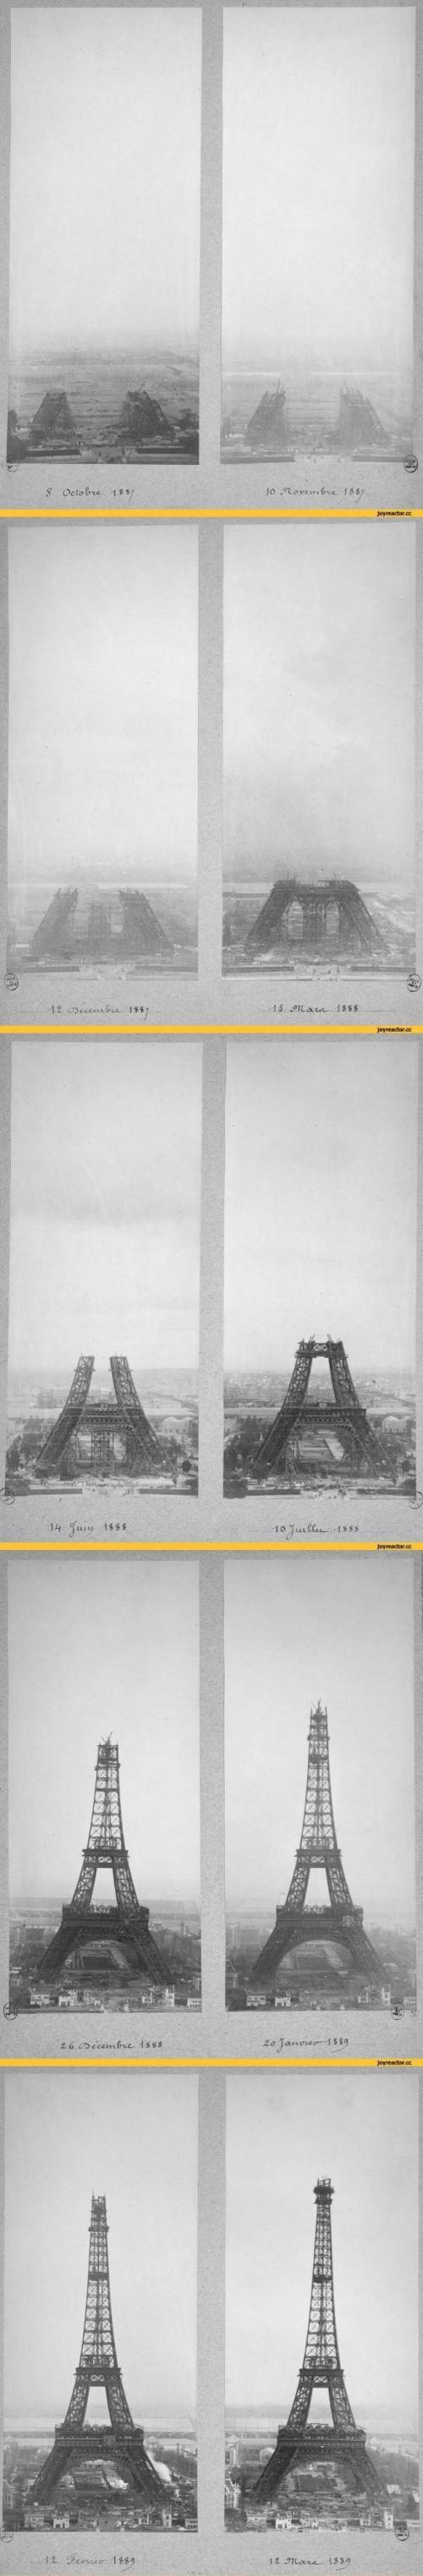 에펠탑 건설과정.jpg